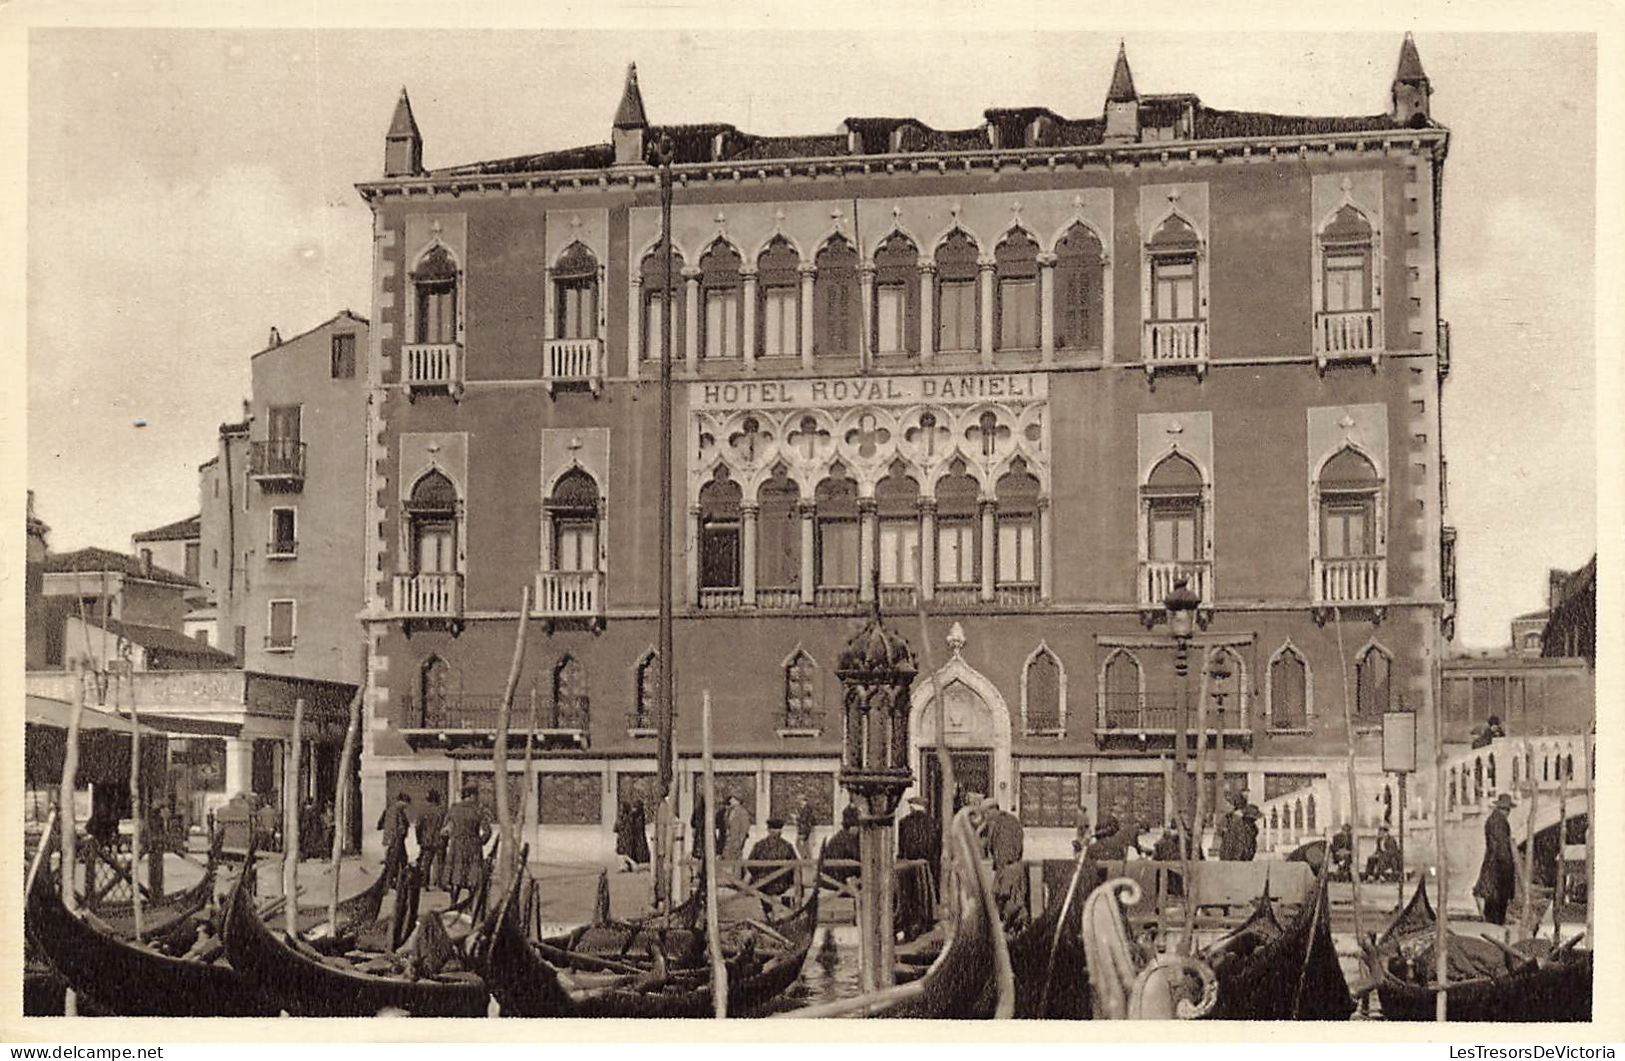 ITALIE - Venezia - Hôtel Royal Danieli - Vue Générale D'un Hôtel - Vue De L'extérieur - Carte Postale Ancienne - Venezia